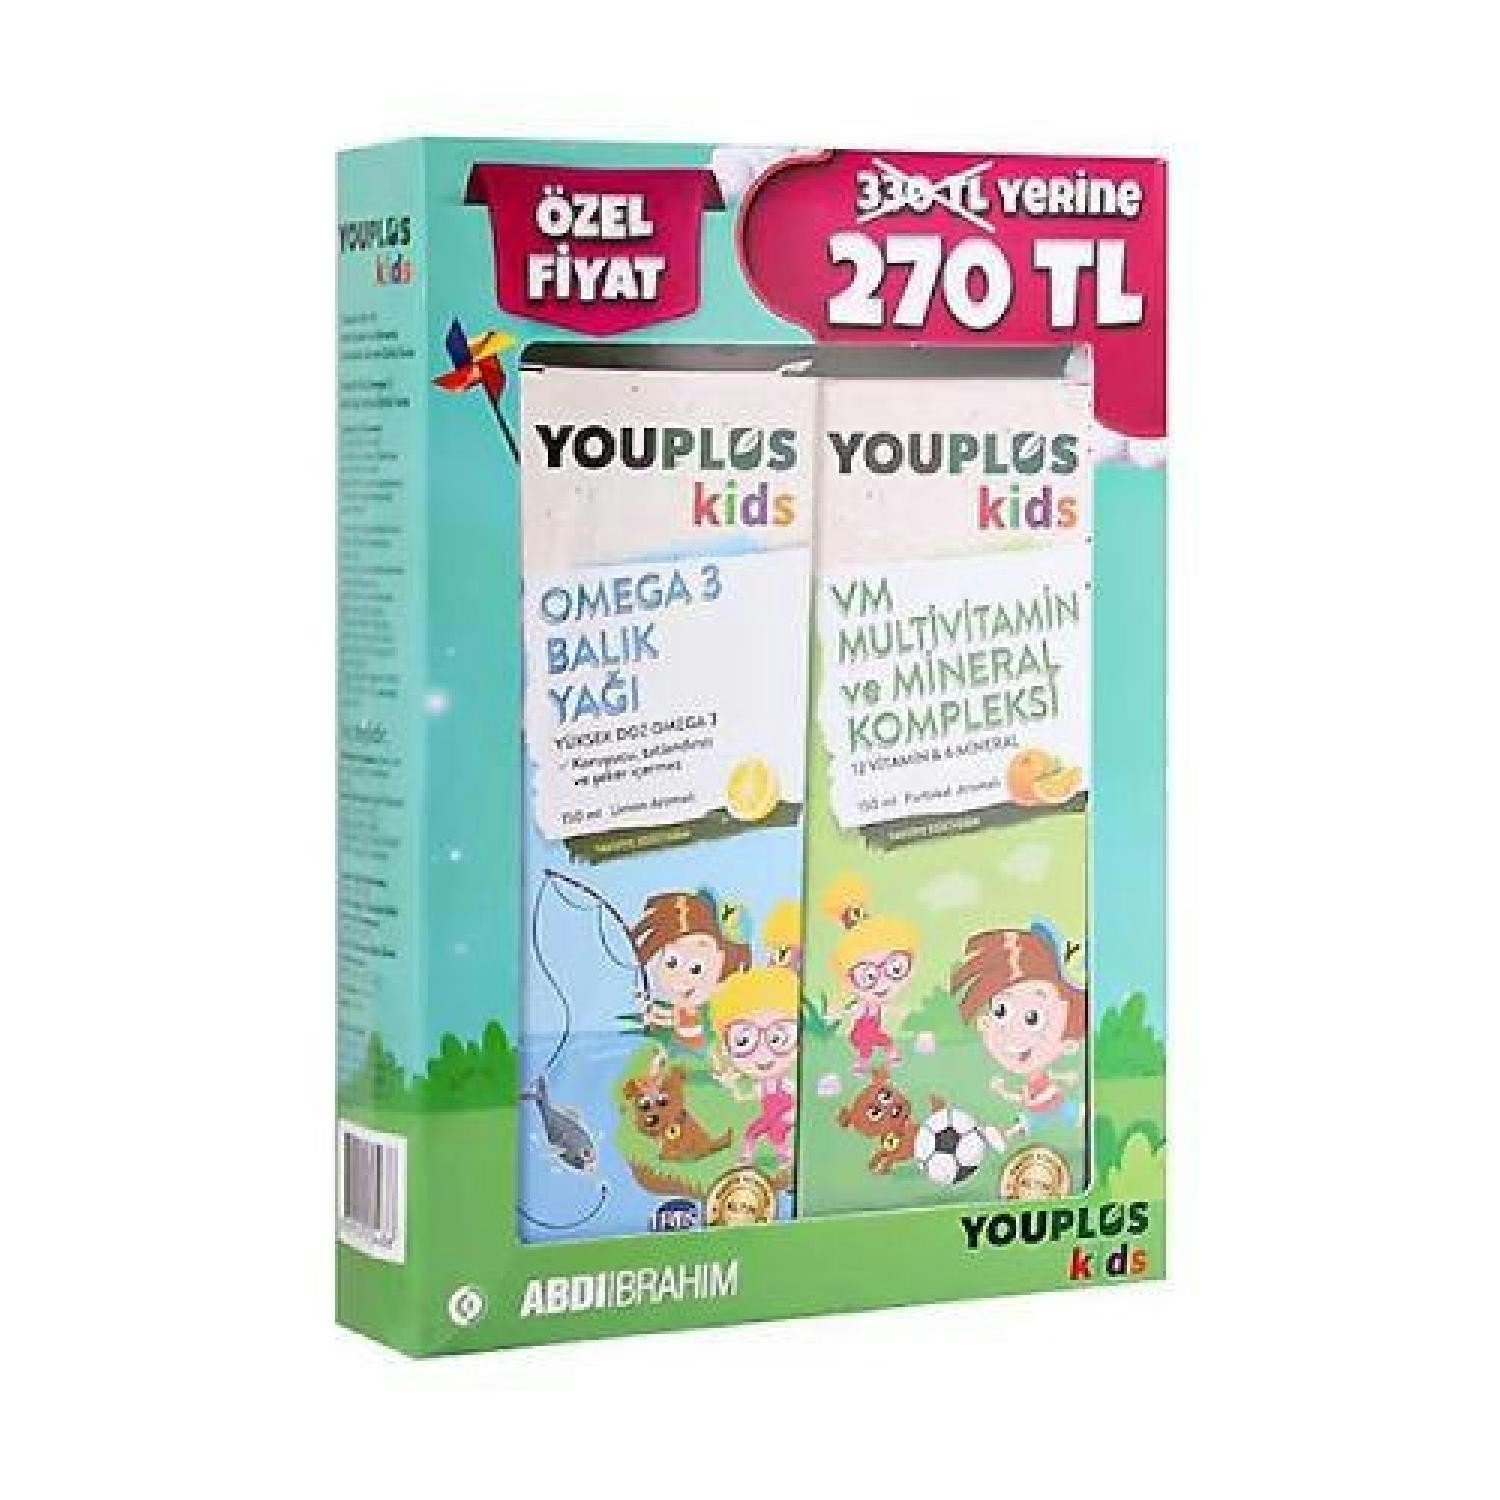 Youplus Kids Omega 3 Balık Yağı 150 ml + Kids Multivitamin 150 ml